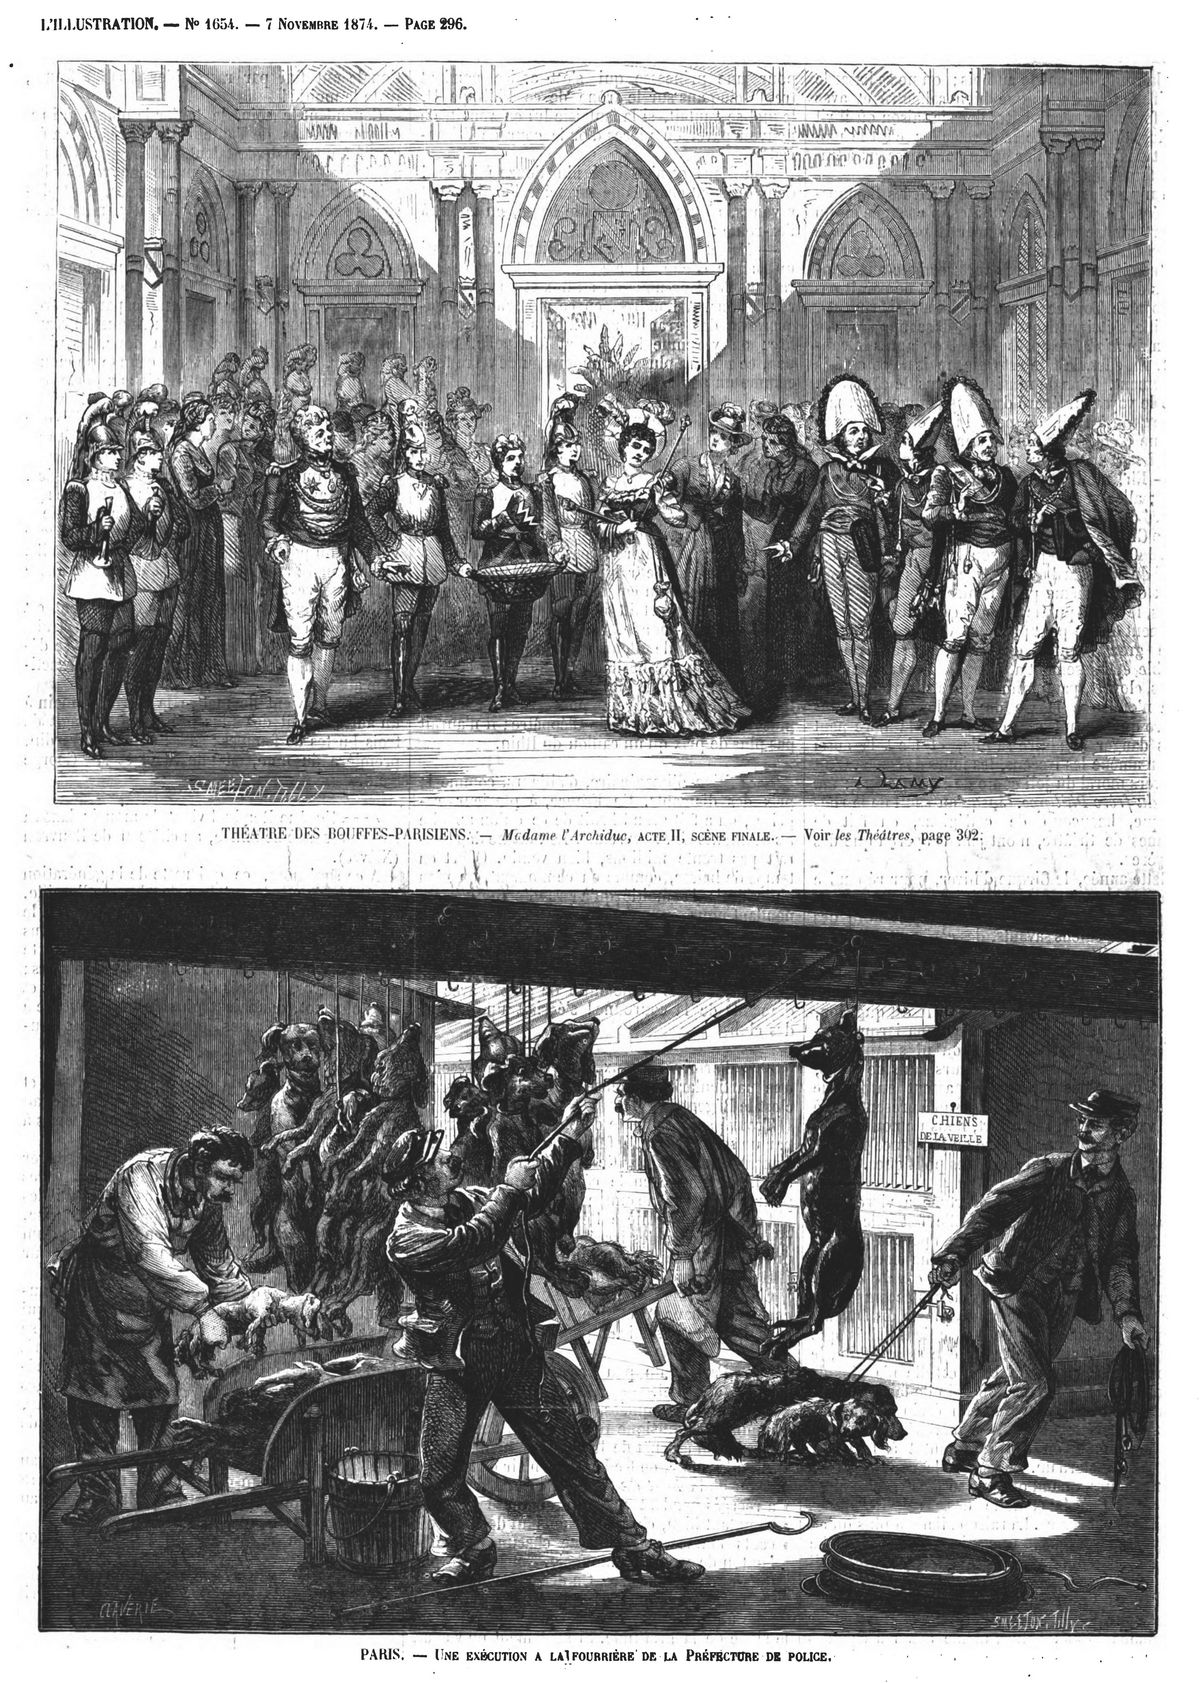 Théâtre des Bouffes-Parisiens. Gravure 1874 — Madame l’Archiduc. Gravure 1874 — Paris : une exécution à la fourrière de la Préfecture de police. Gravure 1874